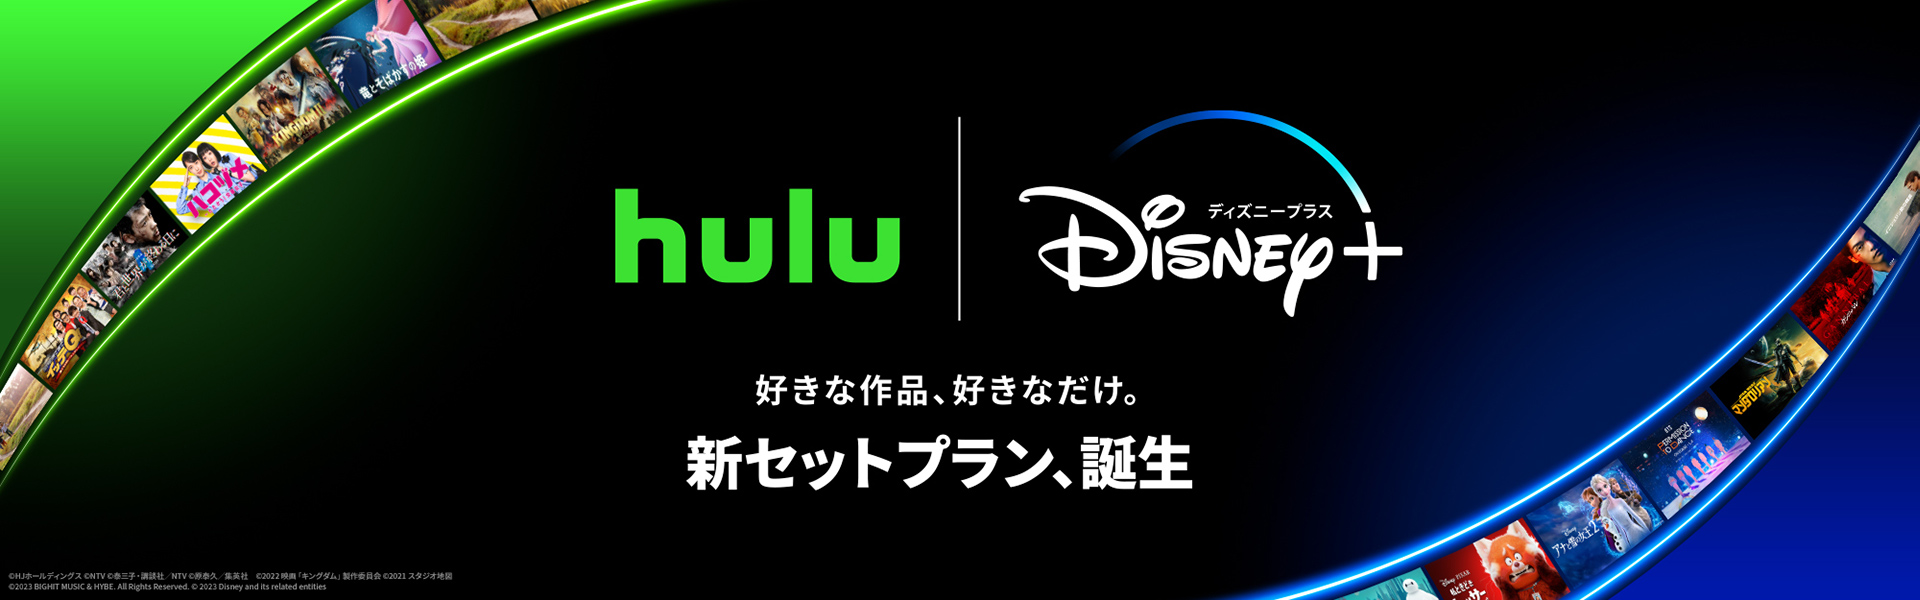 Hulu | Disney+セットプラン